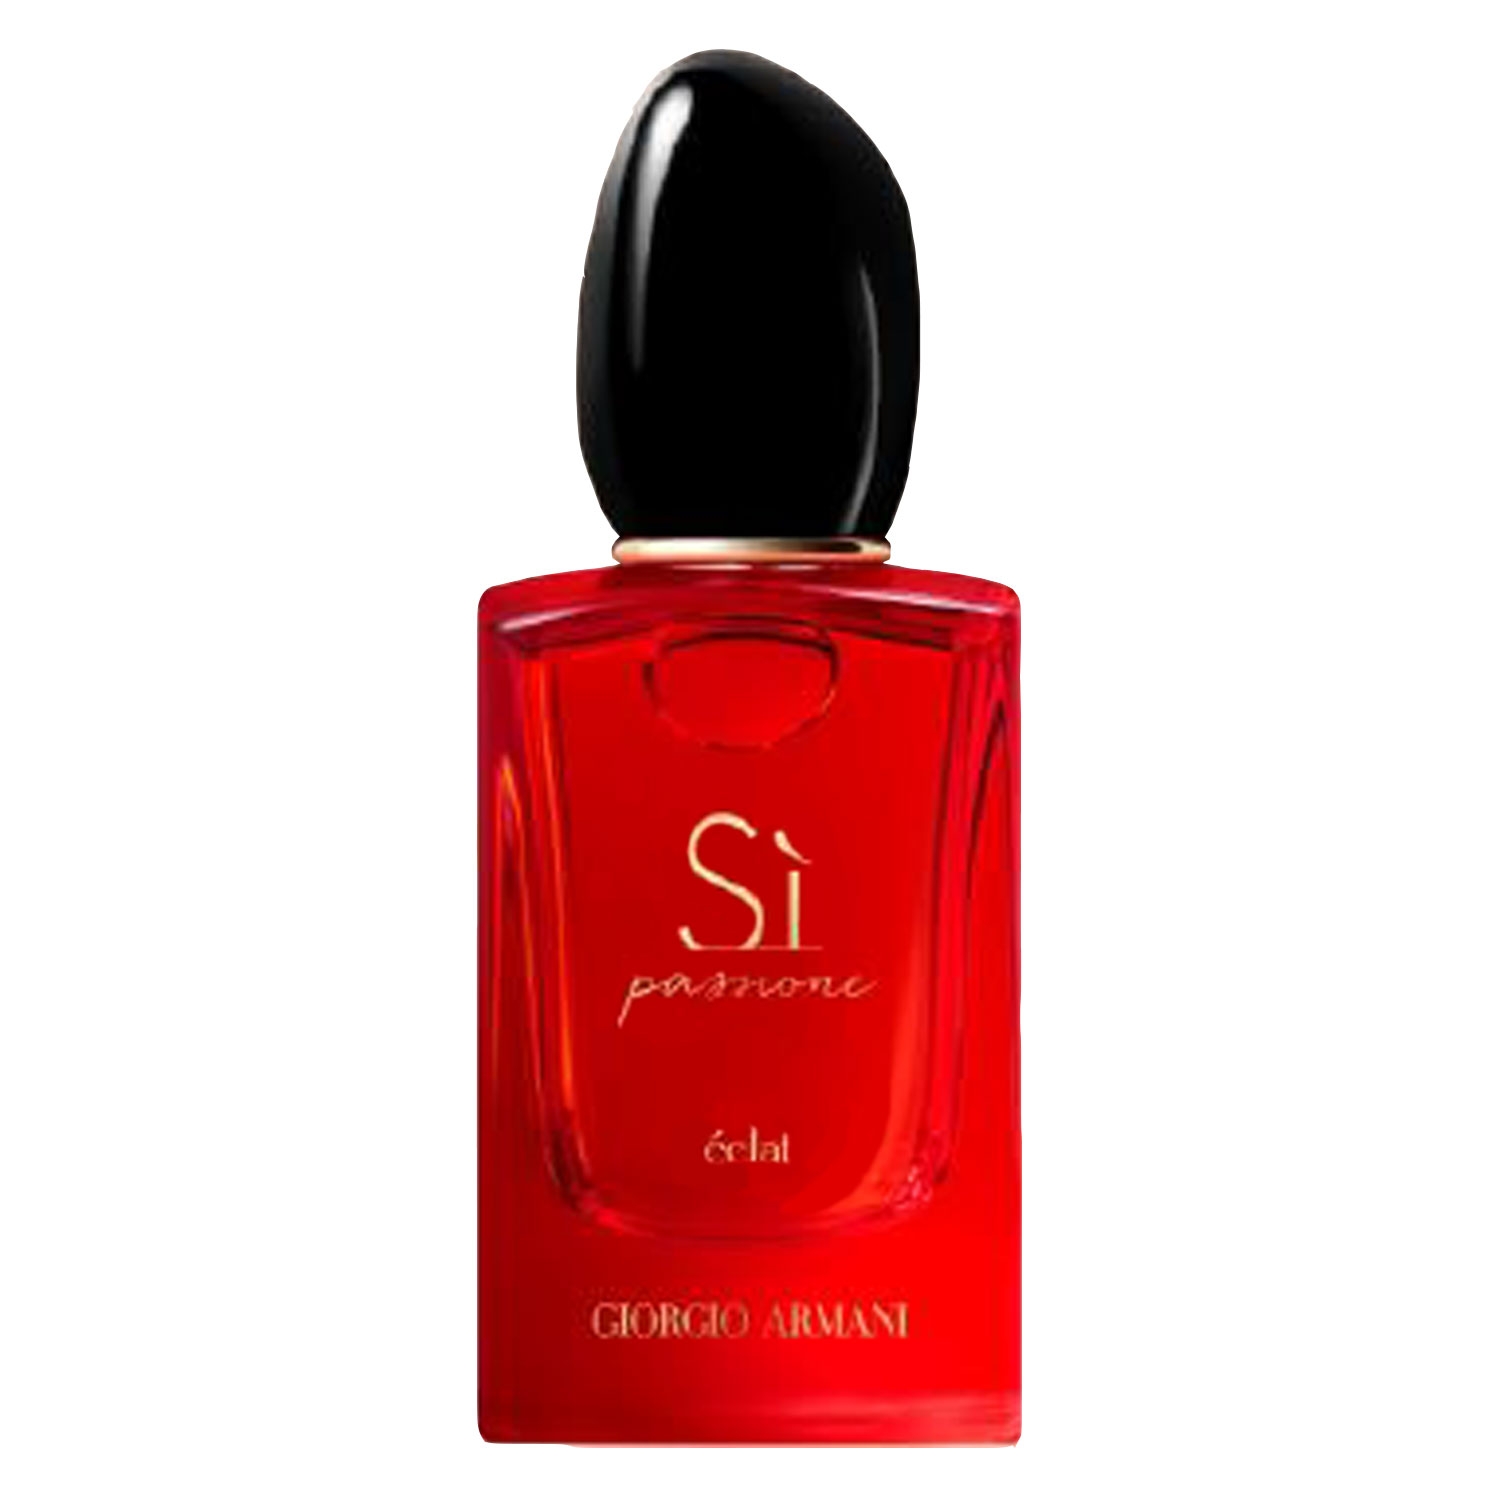 Produktbild von Sì - Passione Eclat Eau de Parfum